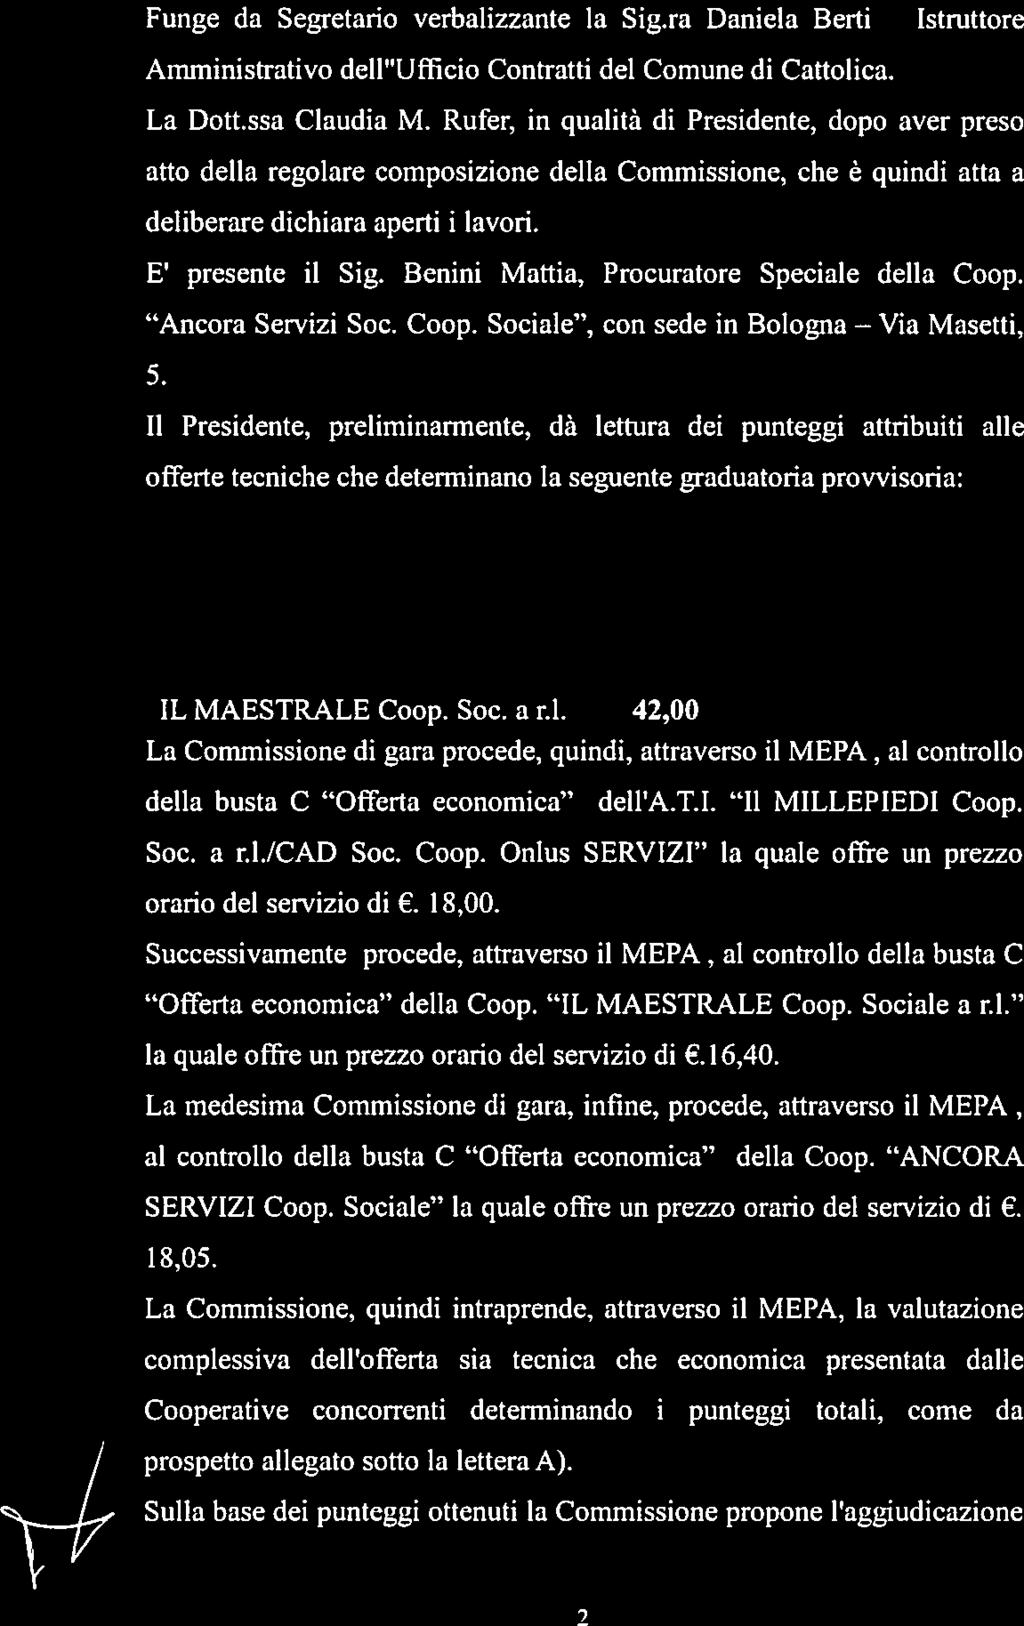 Benini Mattia, Procuratore Speciale della Coop. Ancora Servizi Soc. Coop. Sociale, con sede in Bologna 5.